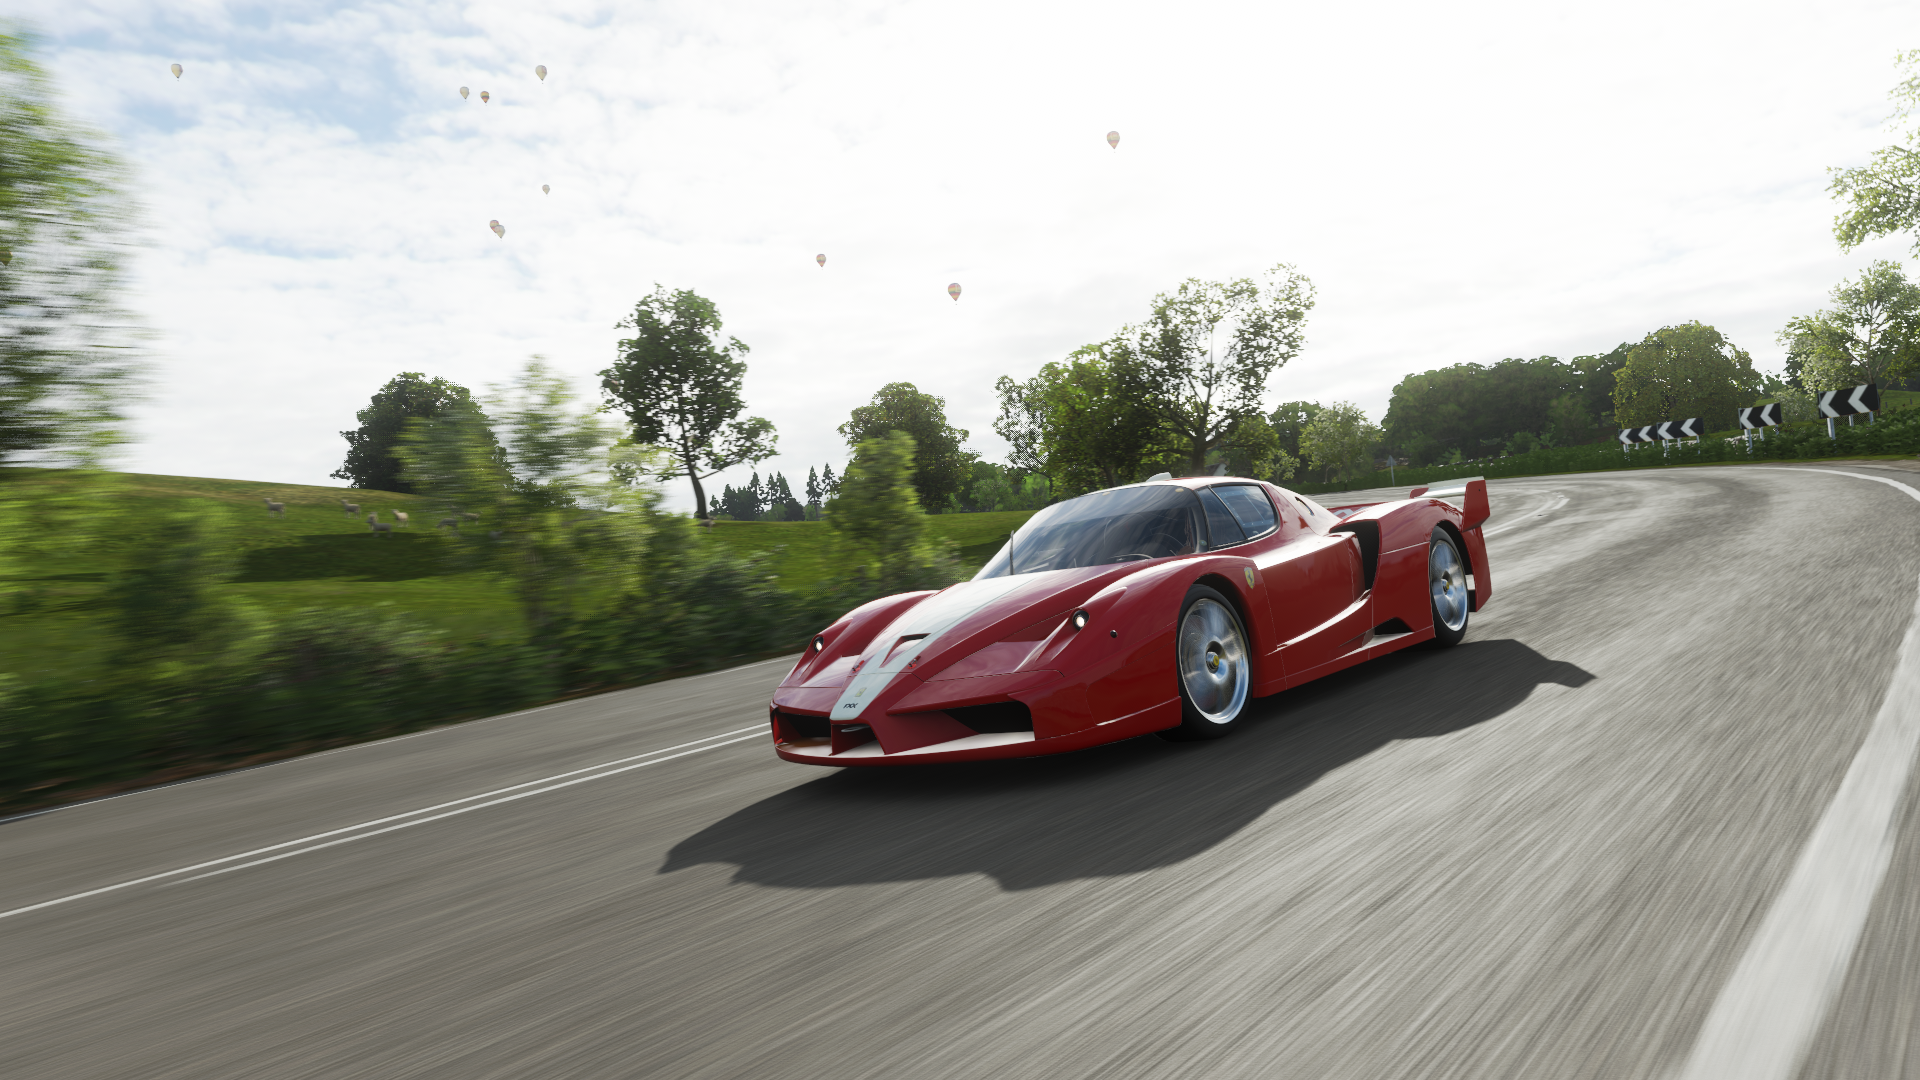 Forza Horizon 4 Ferrari FXX Screen Shot 1920x1080